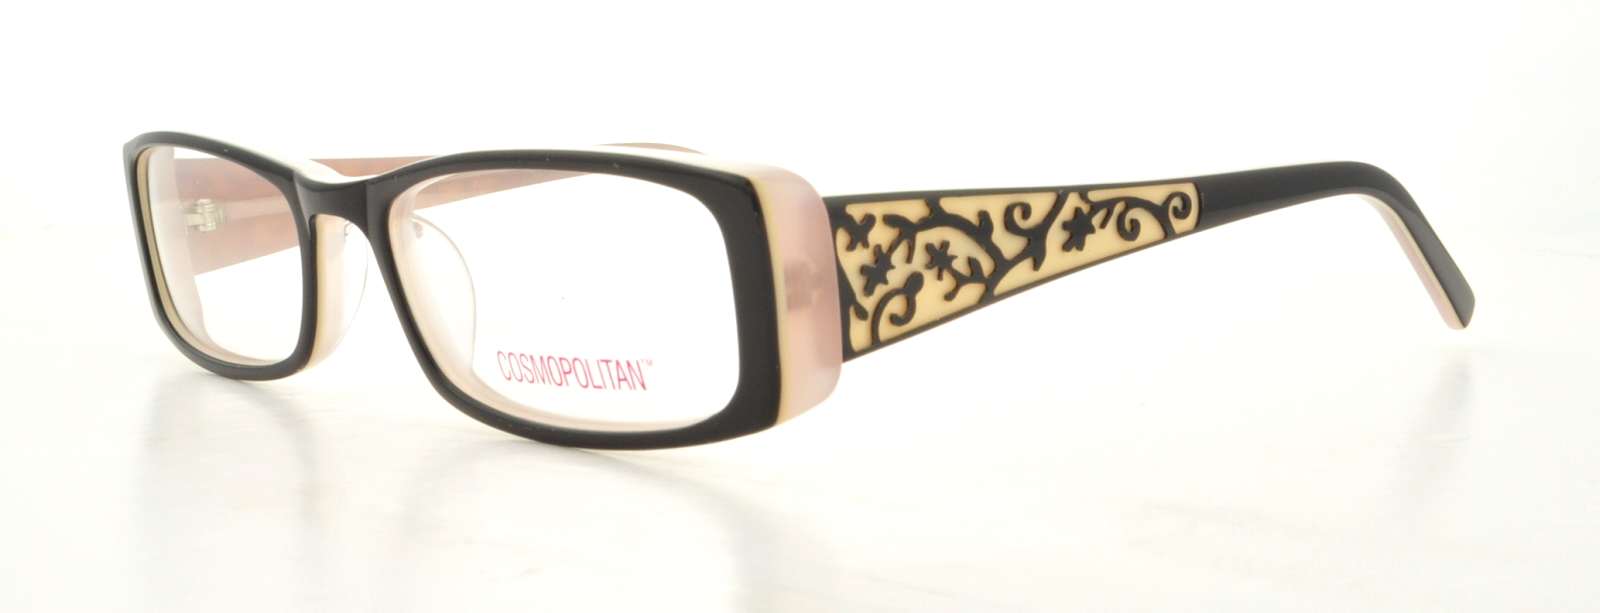 Picture of Cosmopolitan Eyeglasses IRRESISTABLE